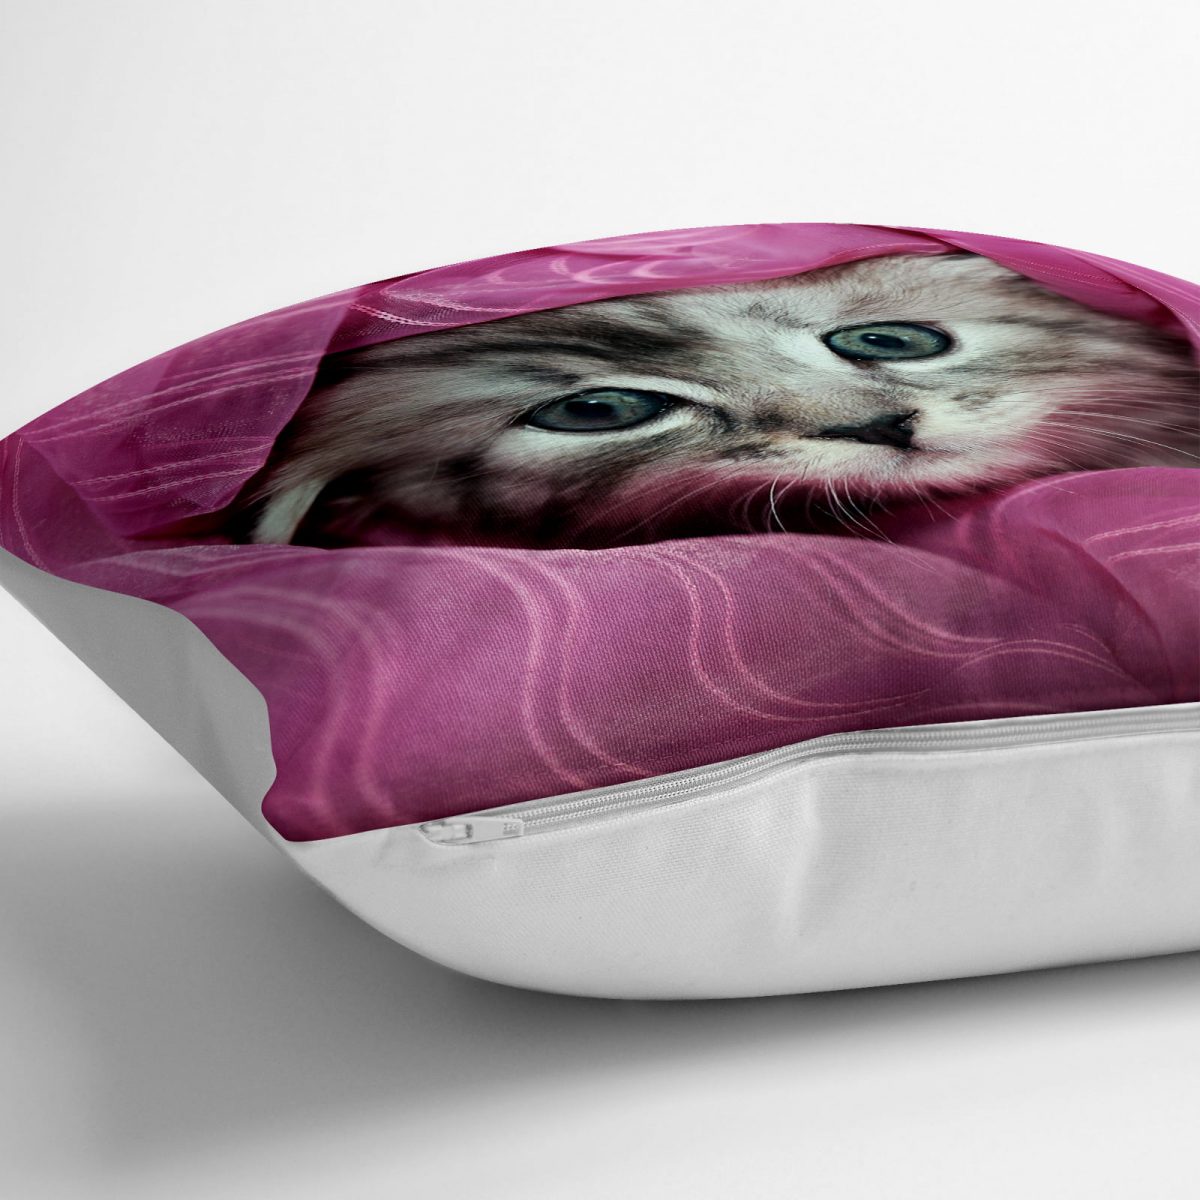 Sevimli Kedicik Dijital Baskılı Dekoratif Kedi & Hayvan Minderi - 70 x 70 cm Realhomes